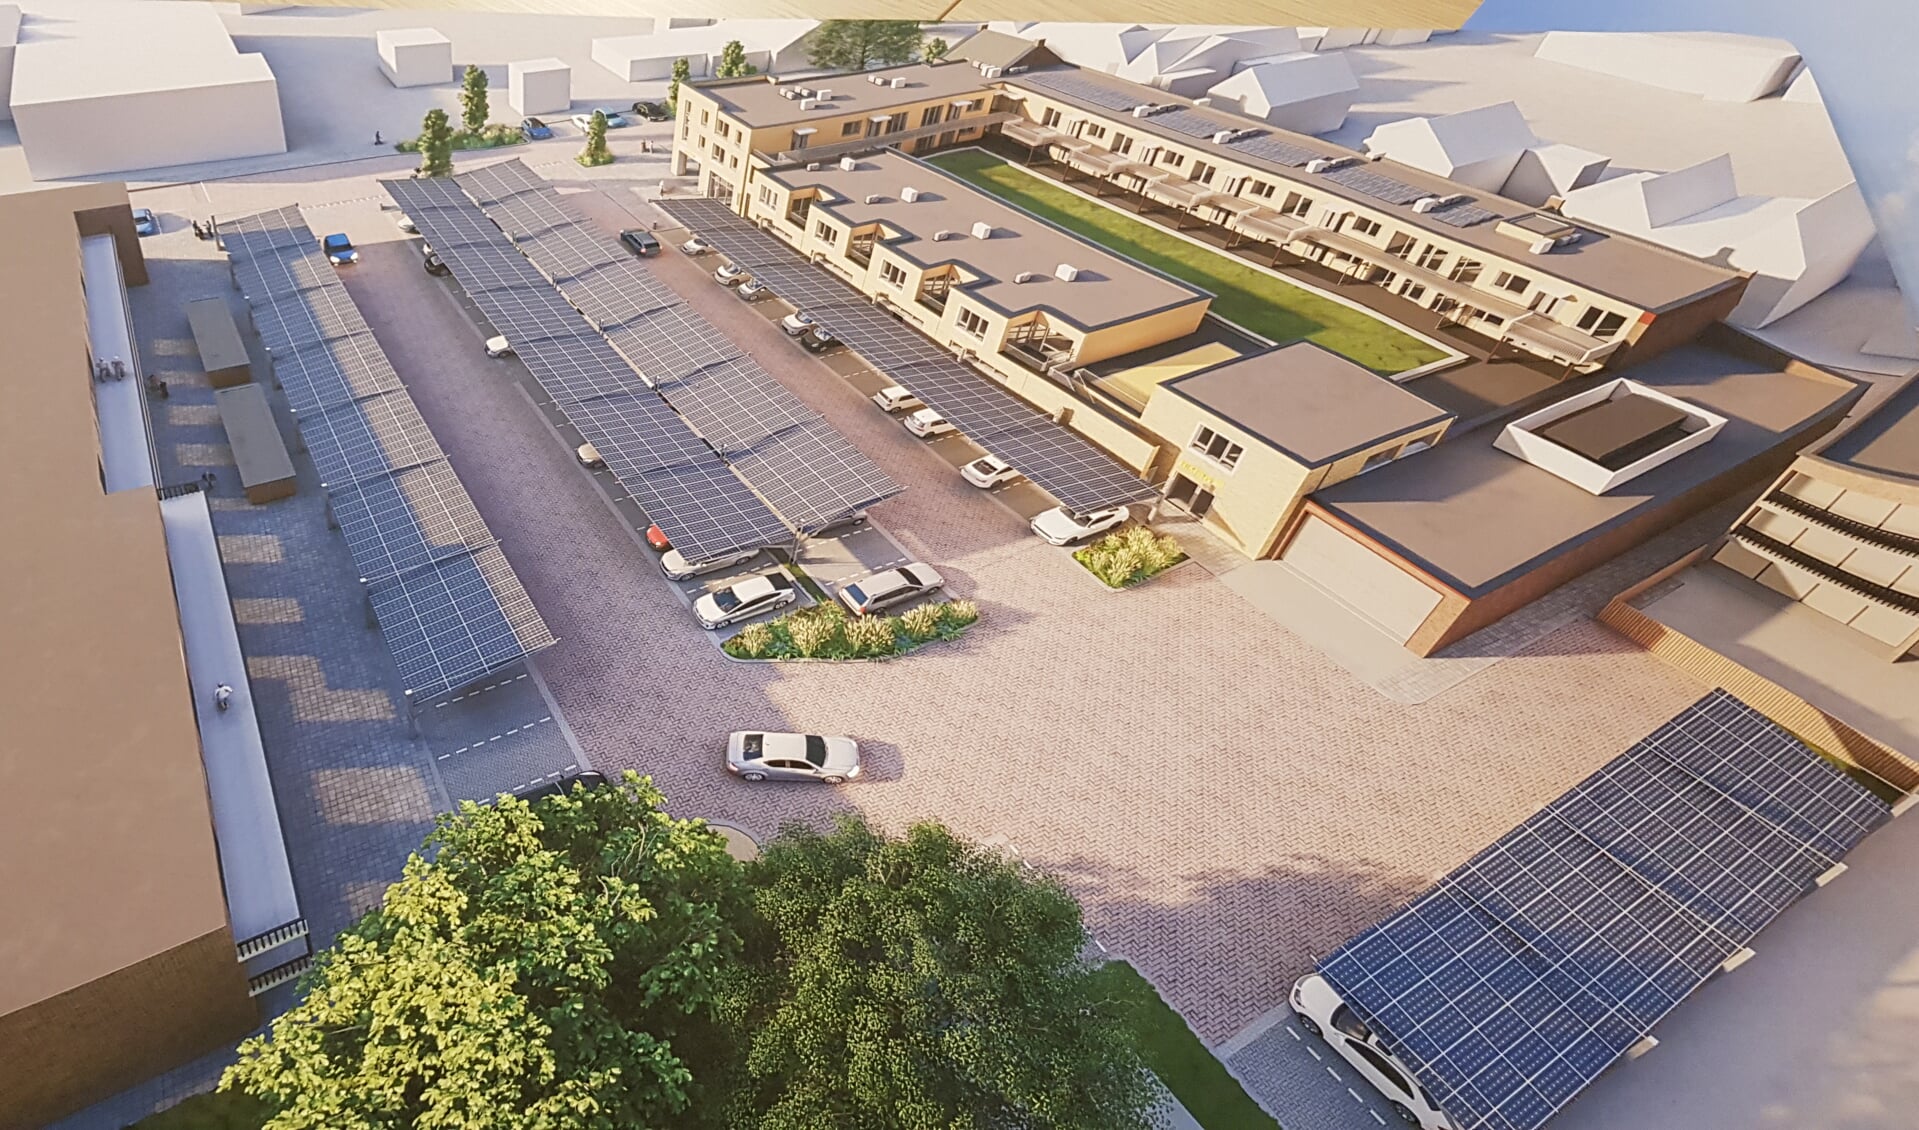 De gemeente lanceerde onder voorbehoud een plan voor het overkappen van de parkeerplaatsen met zonnepanelen 